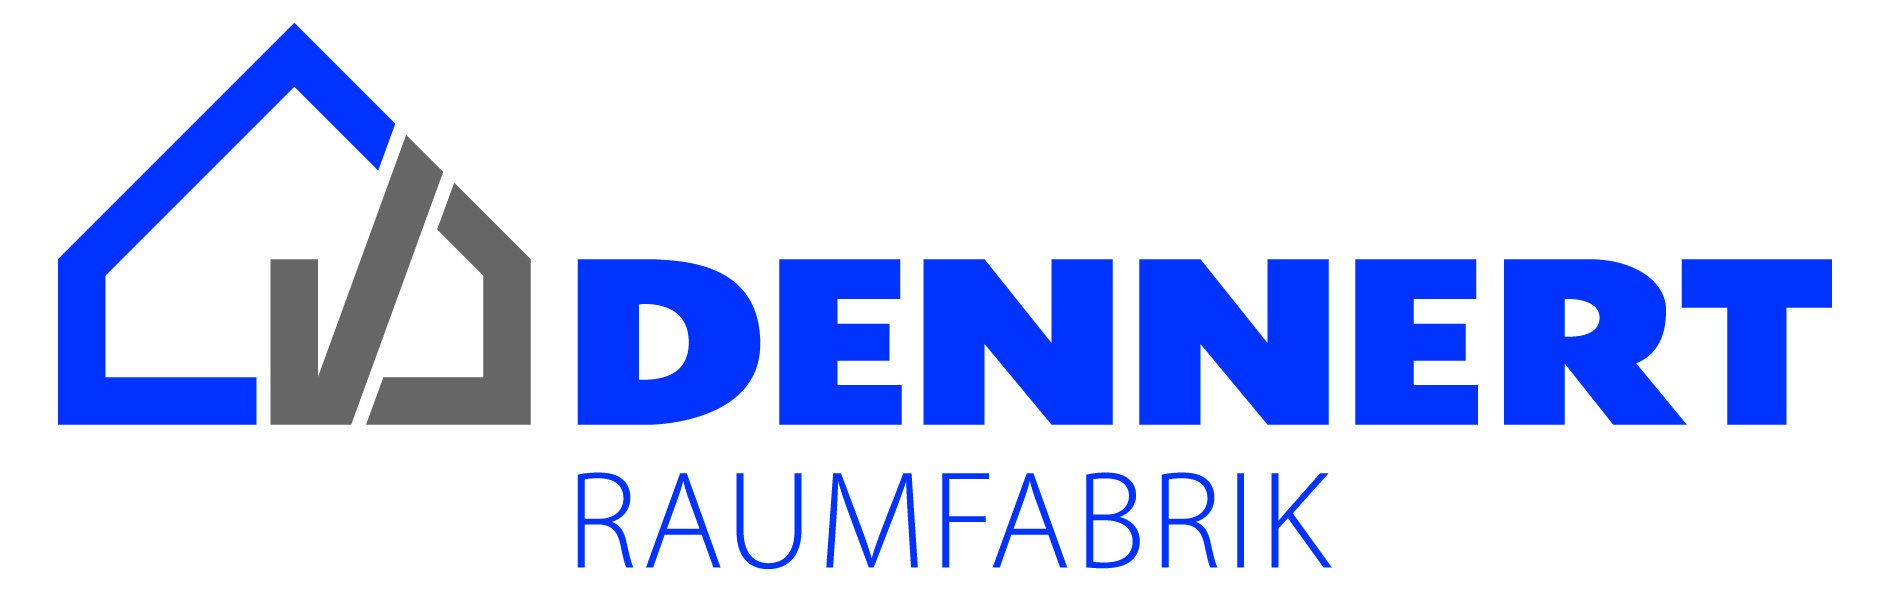 Dennert Massivhaus GmbH